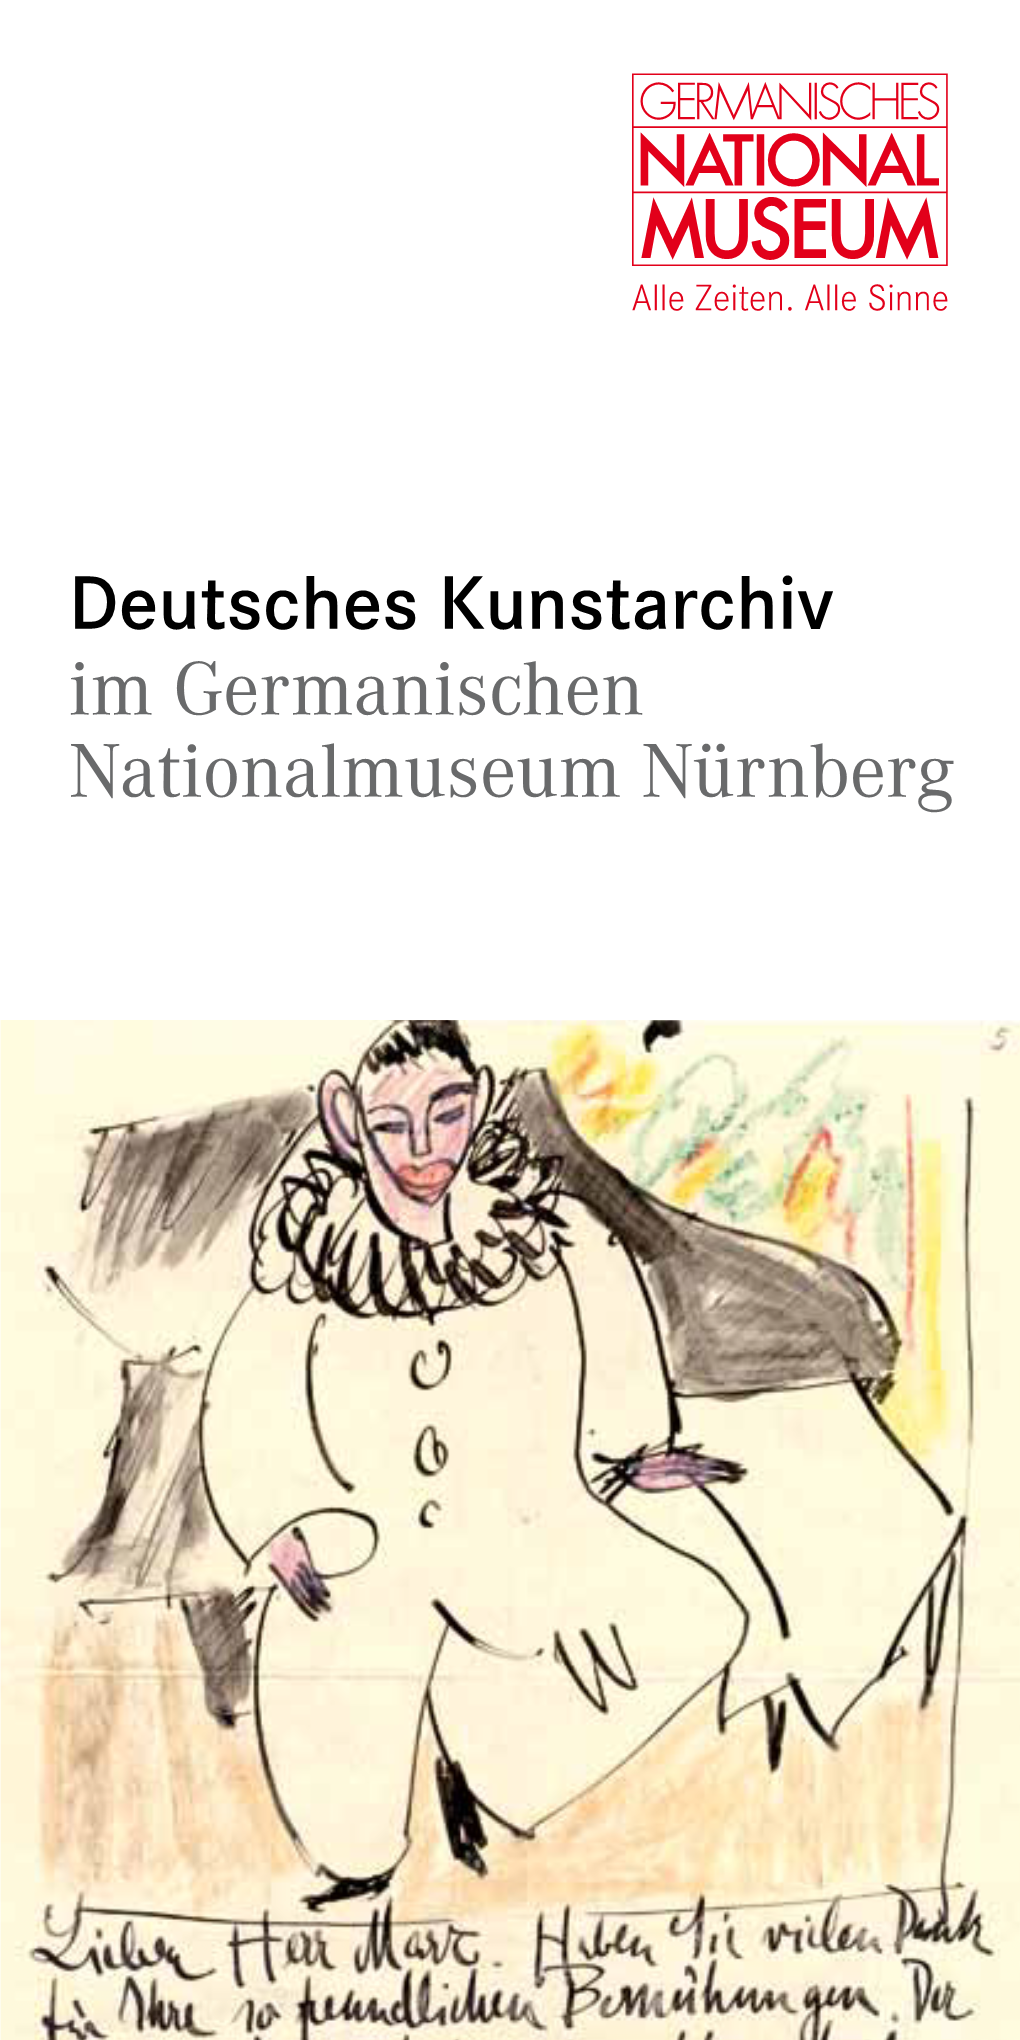 Deutsches Kunstarchiv Im Germanischen Nationalmuseum Nürnberg Deutsches Kunstarchiv Im Germanischen Nationalmuseum Nürnberg